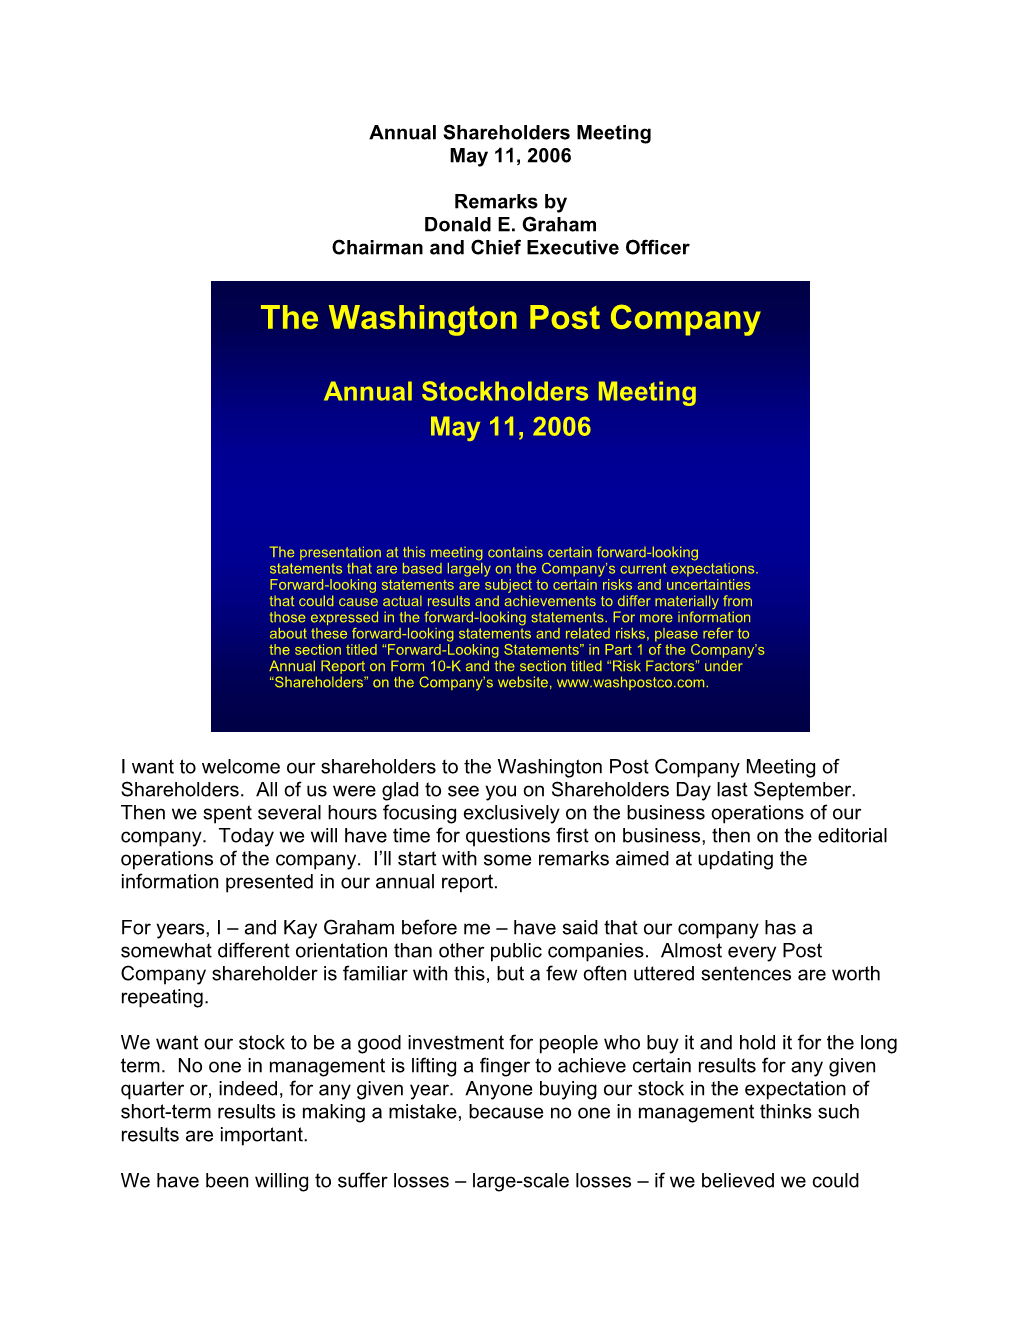 The Washington Post Company